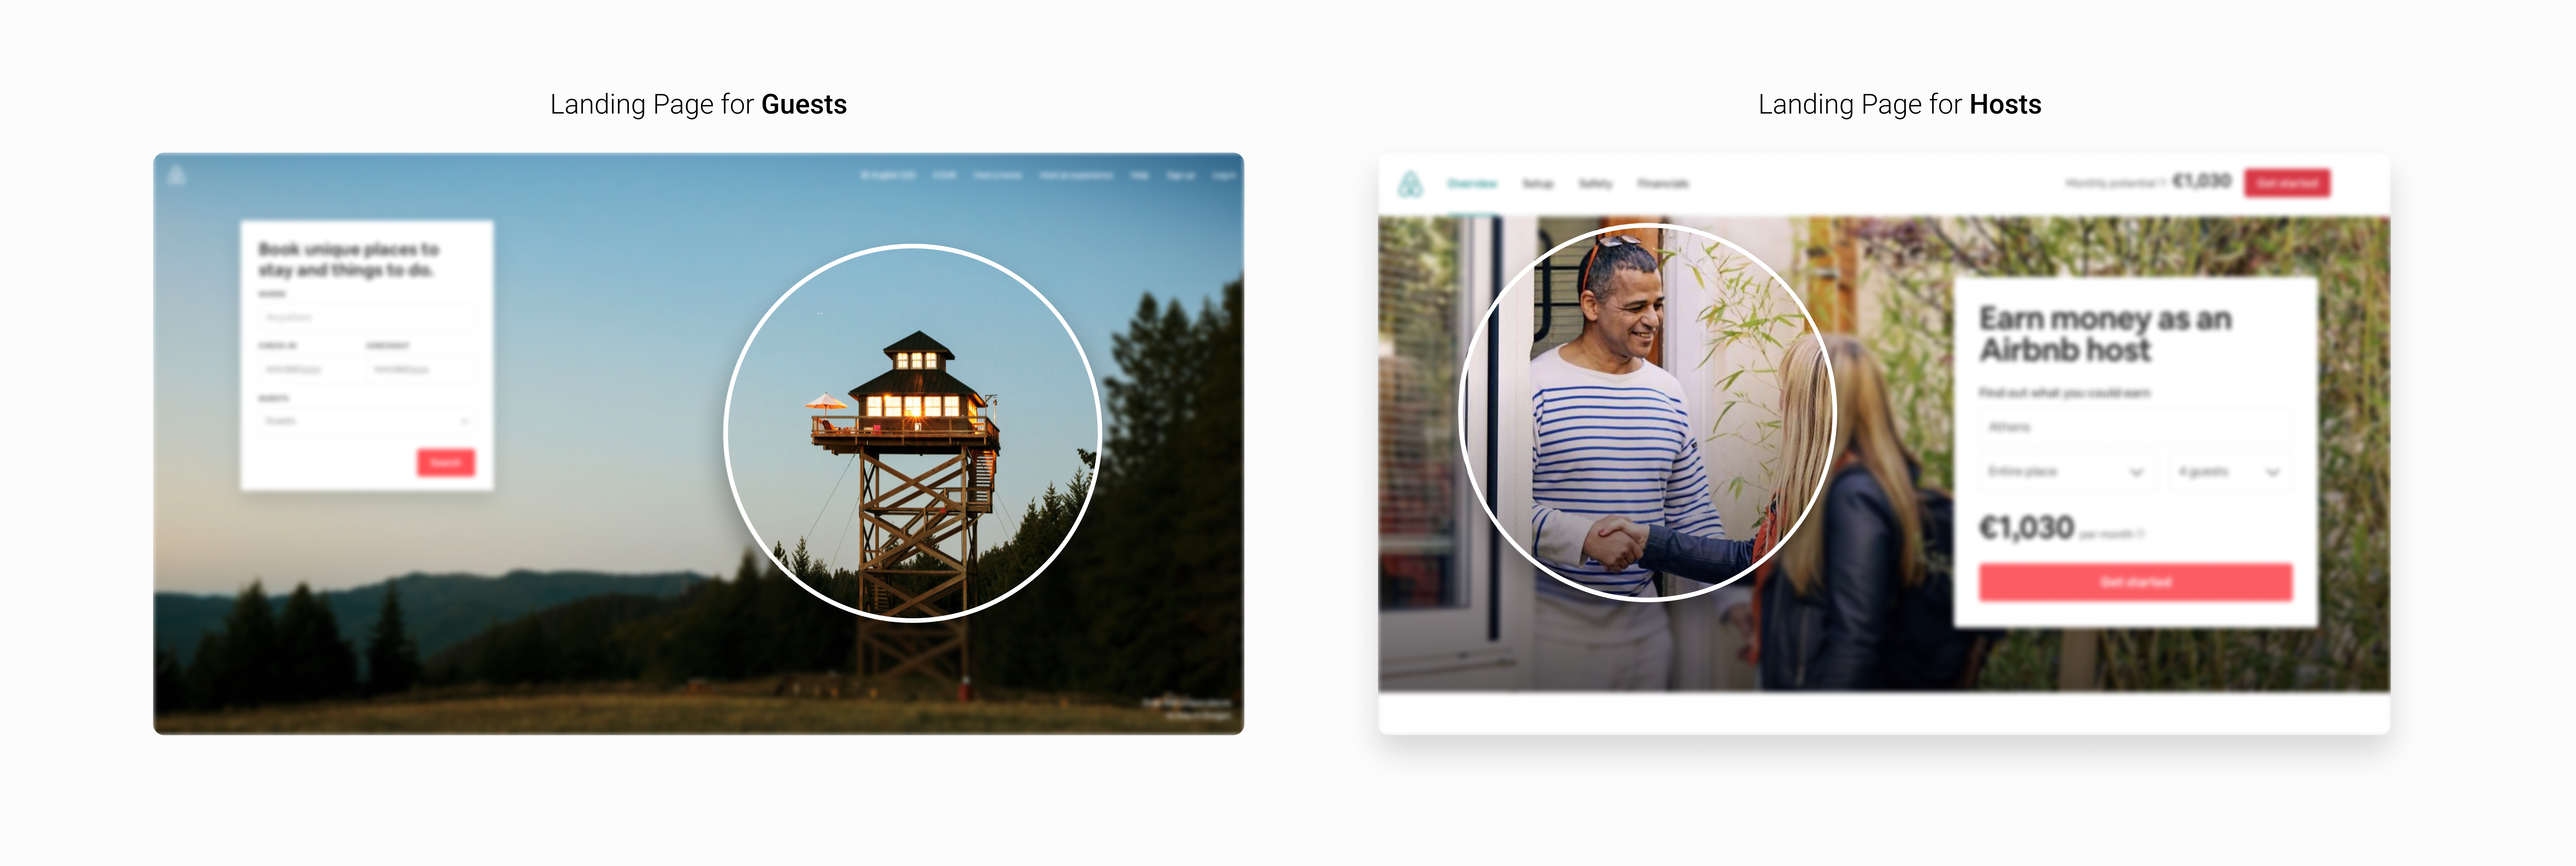 【眼动】Airbnb如何通过目标网页设计来驱动用户的行为 - 图12